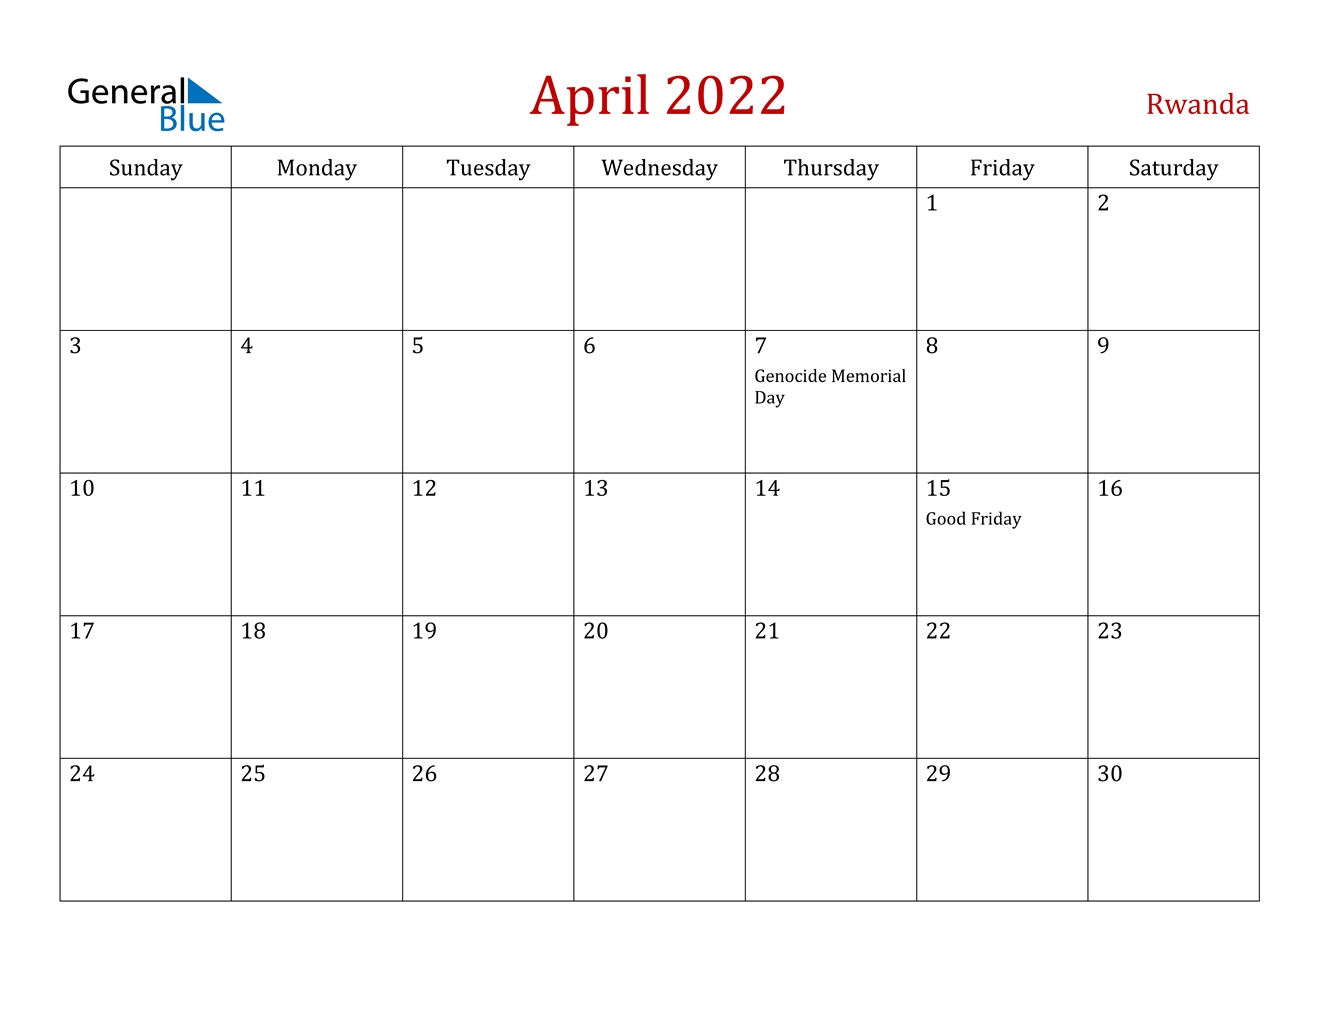 April 2022 Calendar - Rwanda